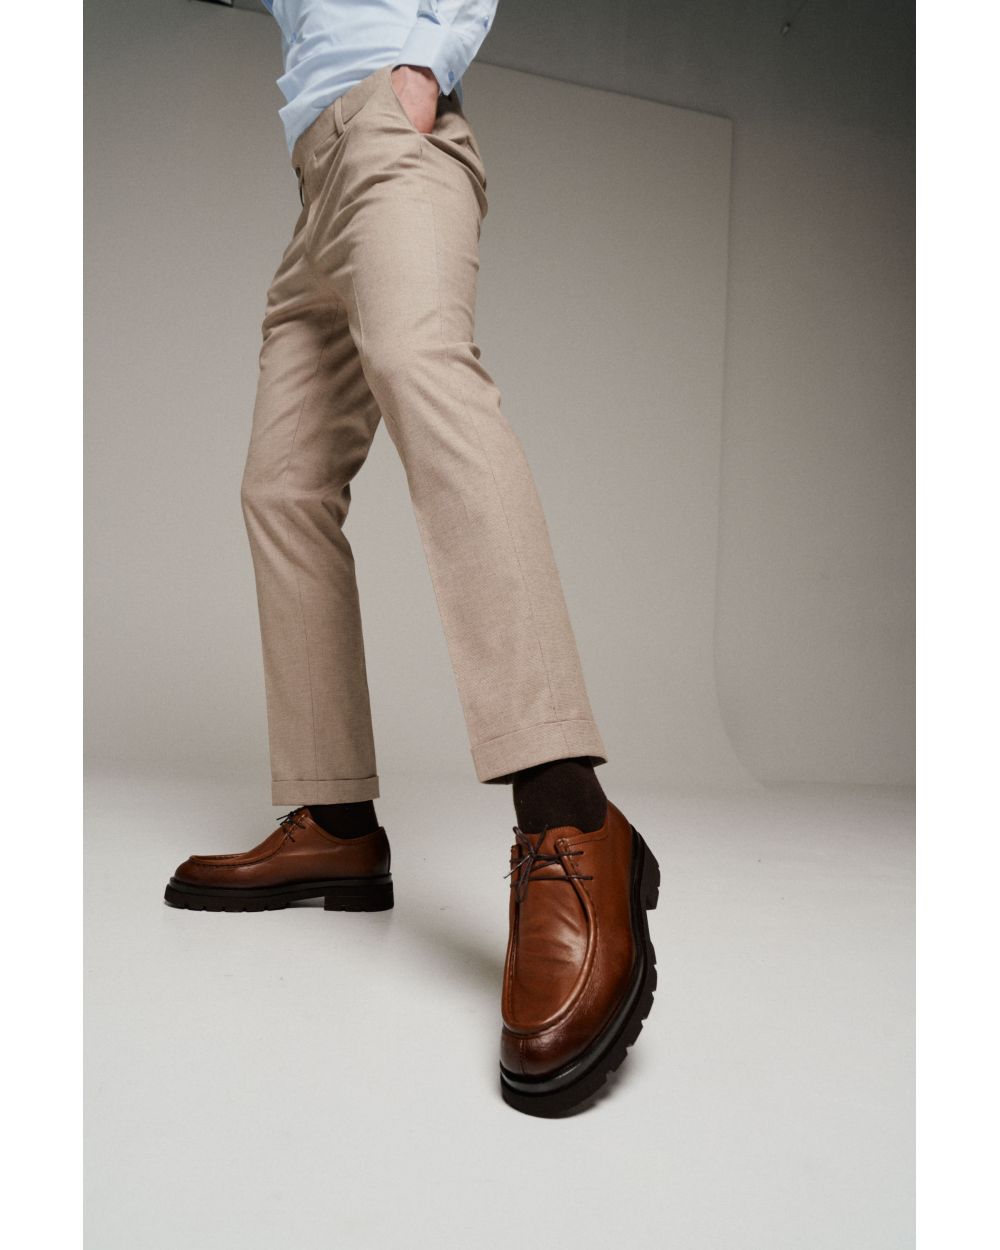 Туфли мужские рыжие, дизайн "тирольские ботинки"